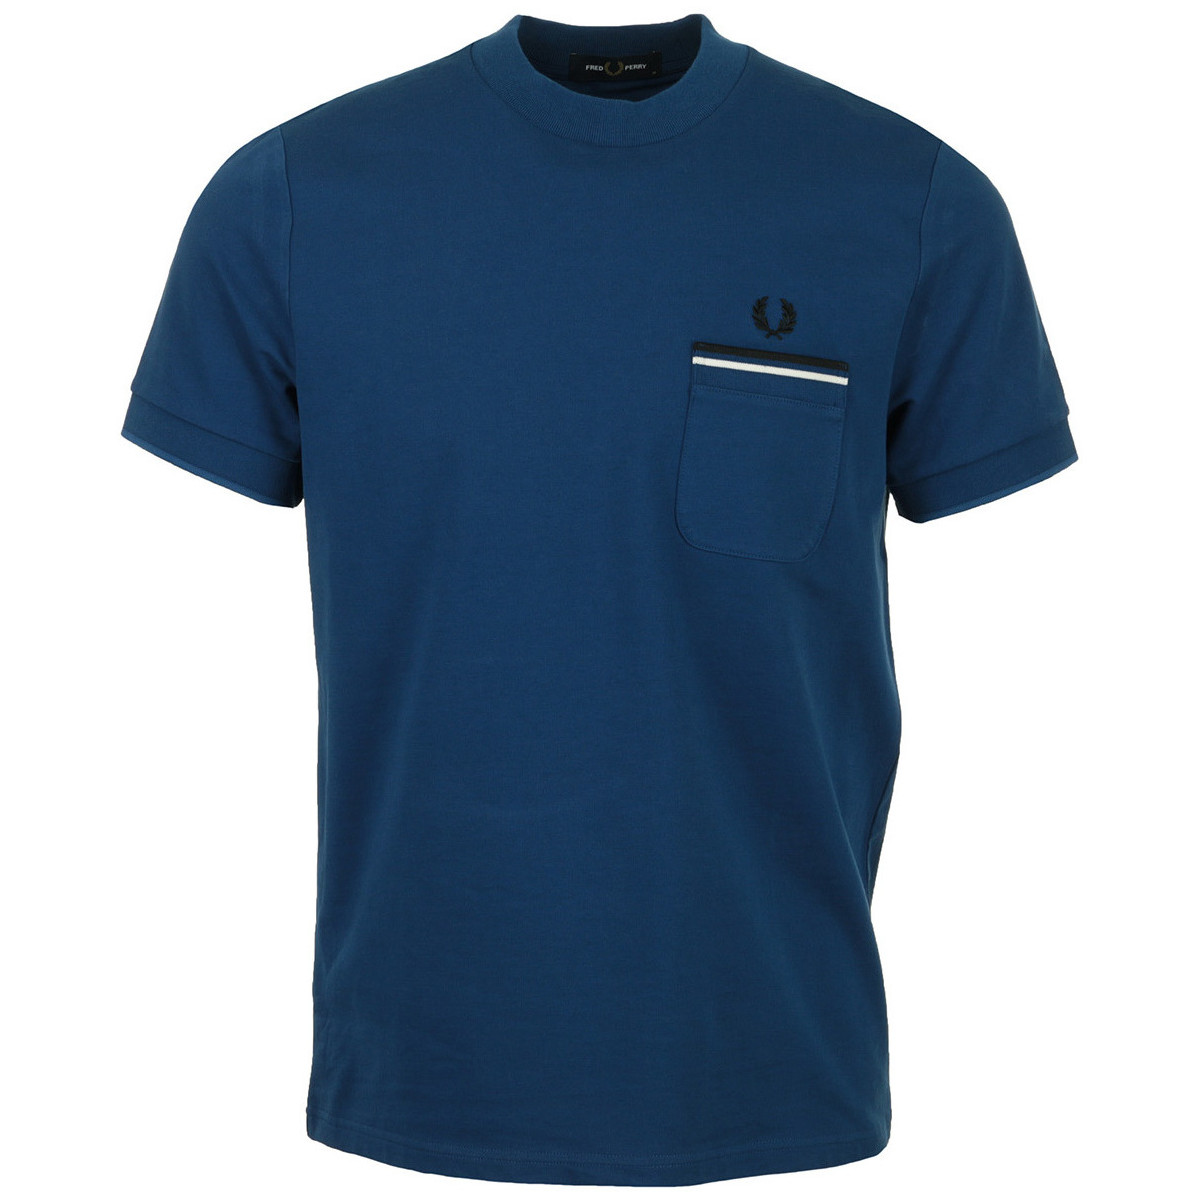 Textil Muži Trička s krátkým rukávem Fred Perry Loopback Jersey Pocket T-Shirt Modrá